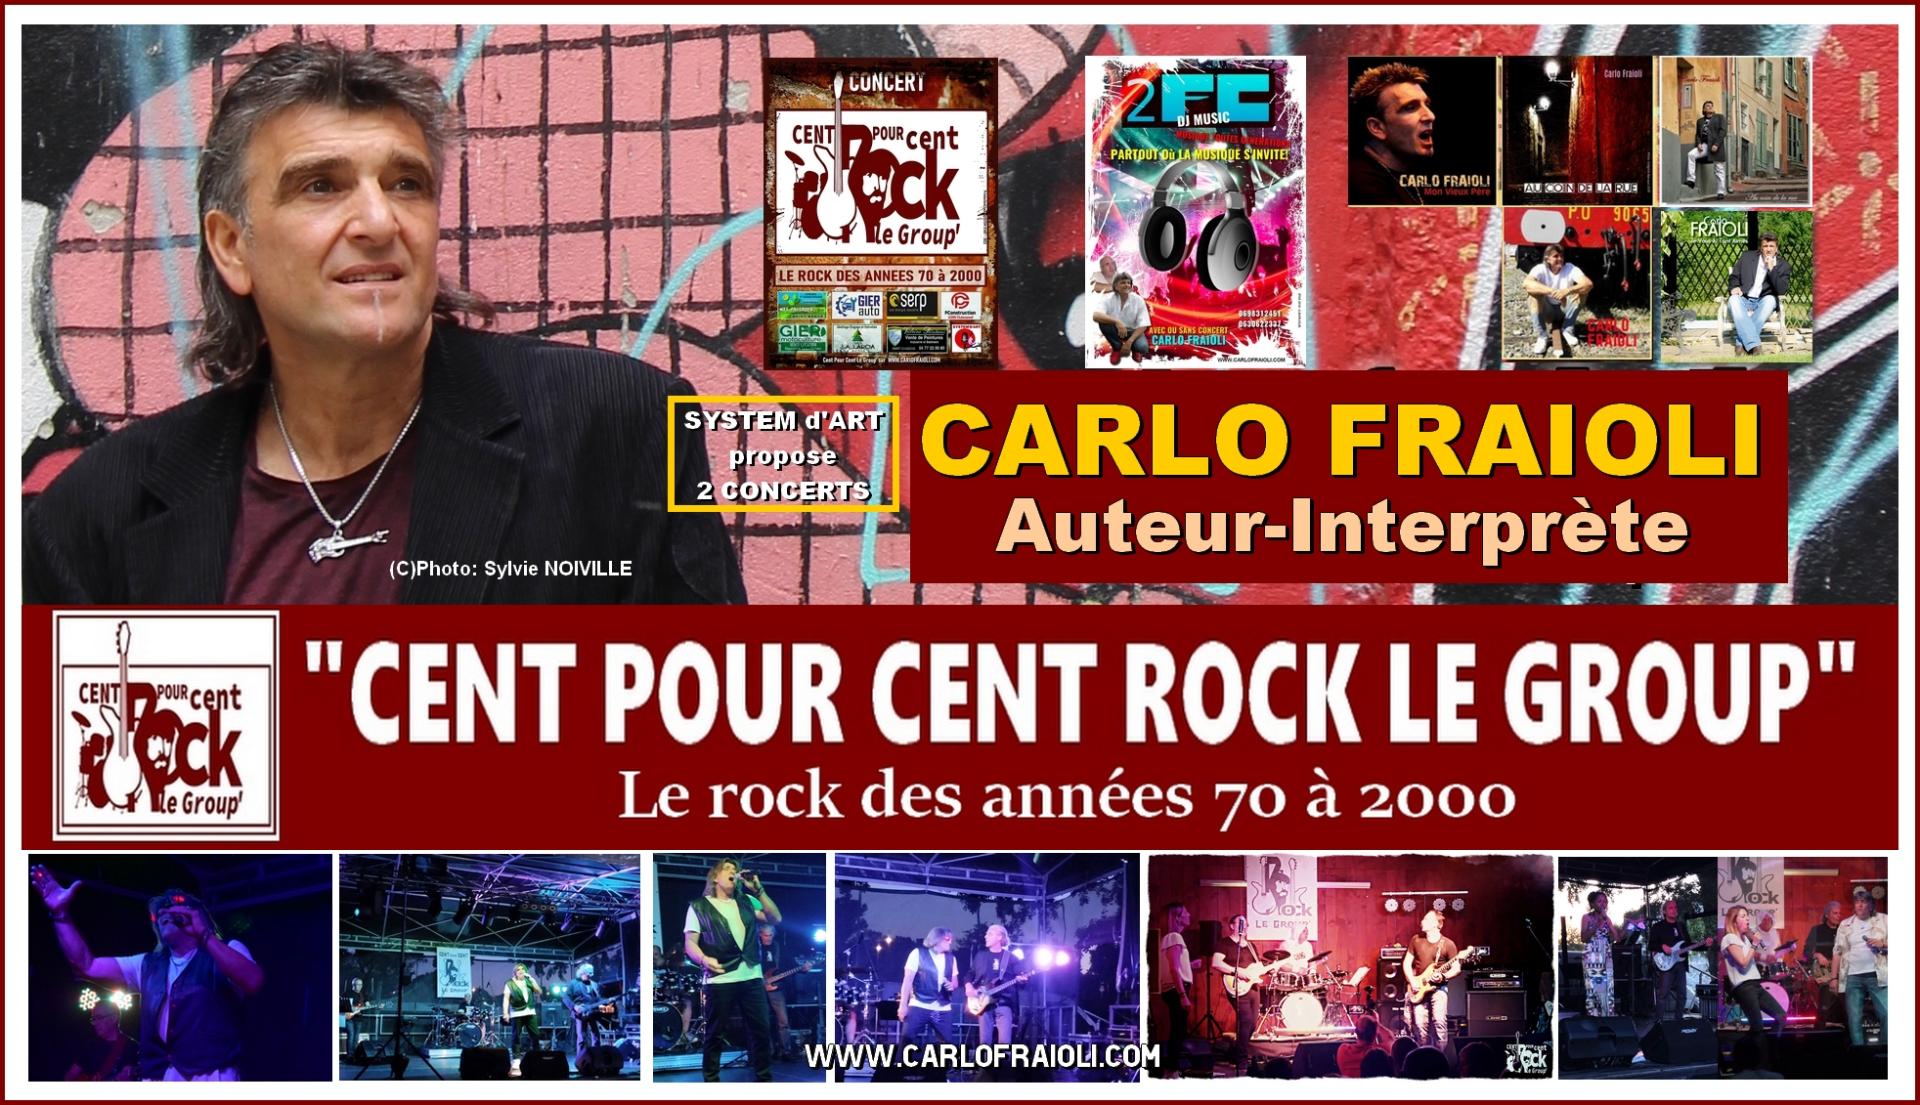 Carlo fraioli et cent pour cent rock le group